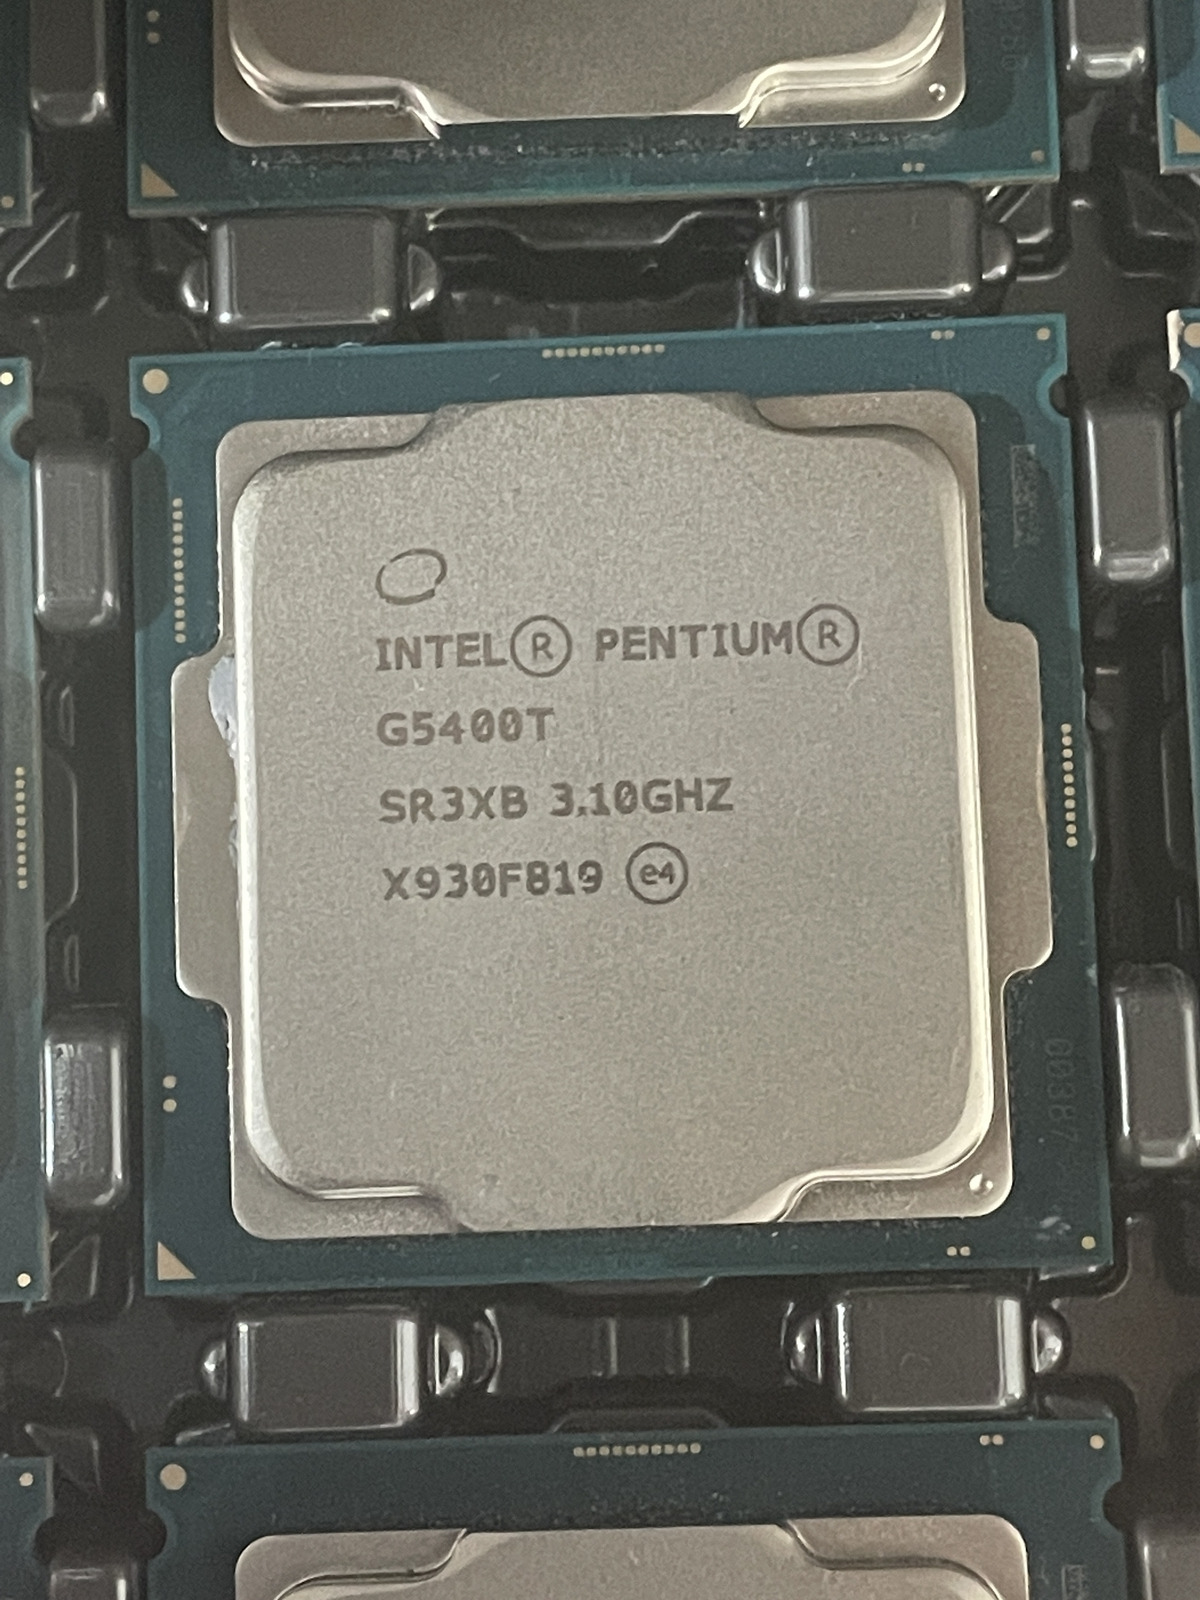 Lot of 20 Intel Pentium G5400T 3.10GHz 4MB SR3XB CPU Processor